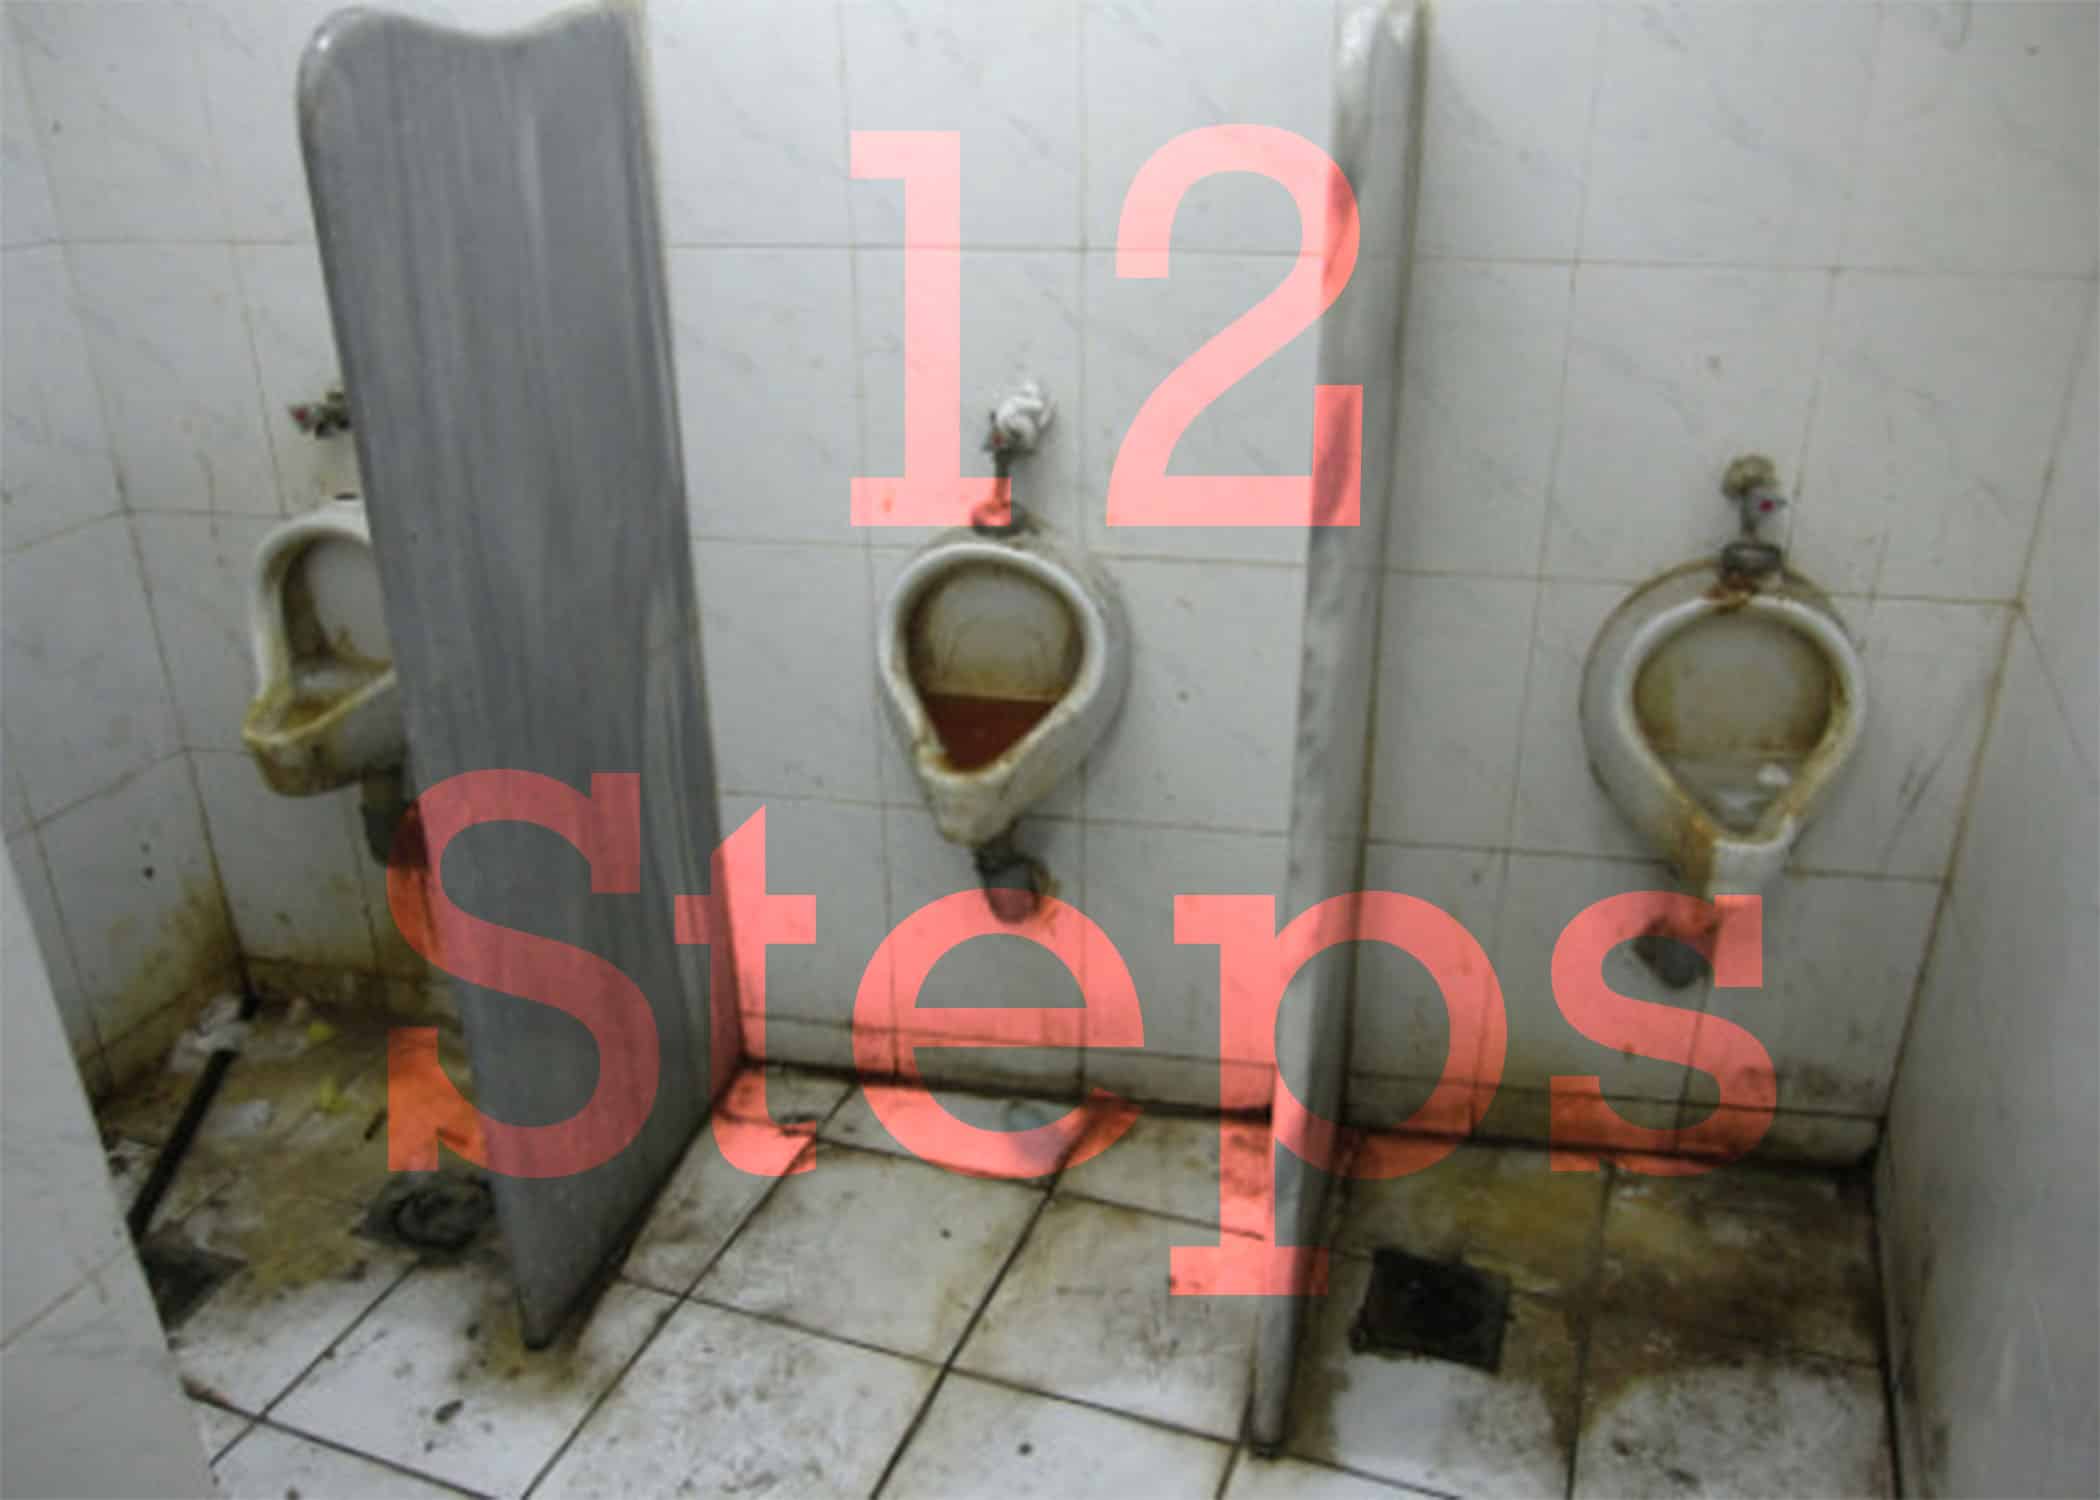 Twelve Steps for faggots